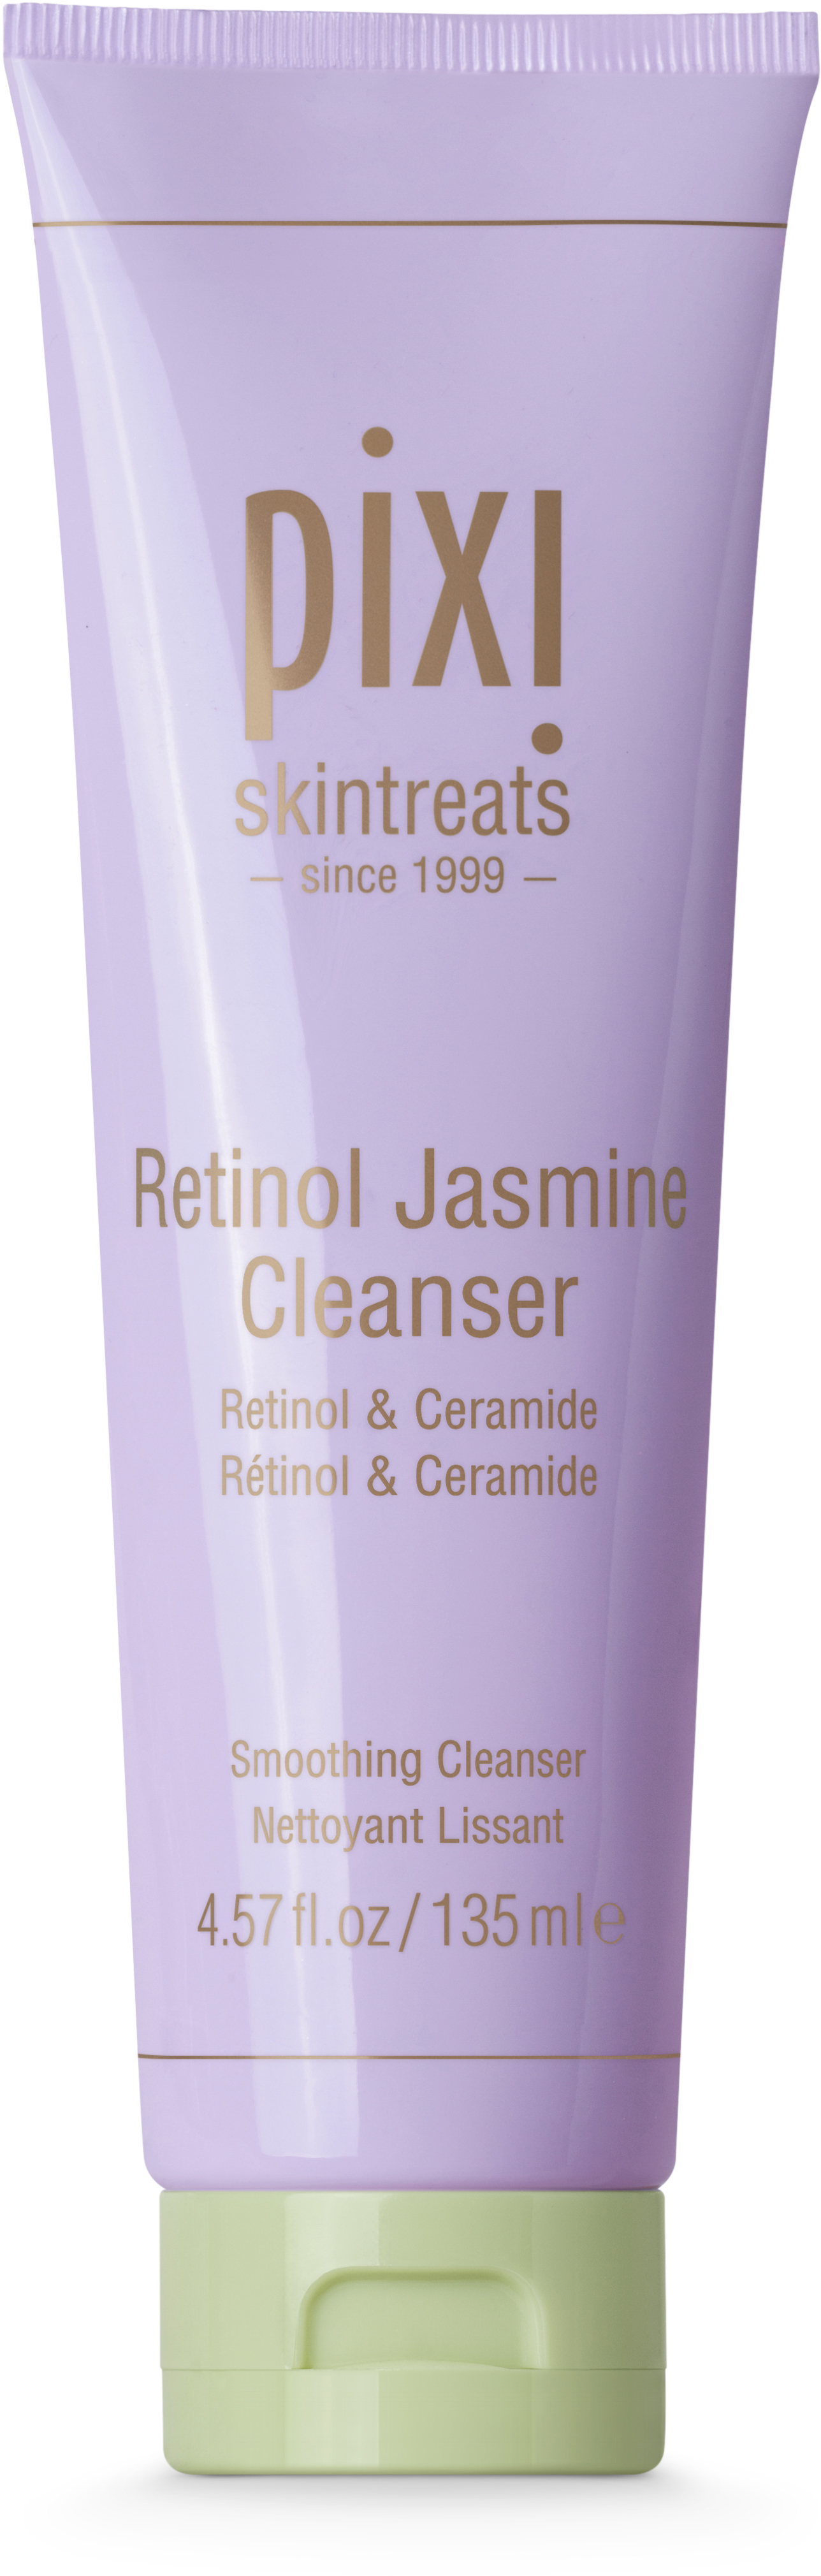 Pixi Retinol Jasmine Cleanser 135 ml